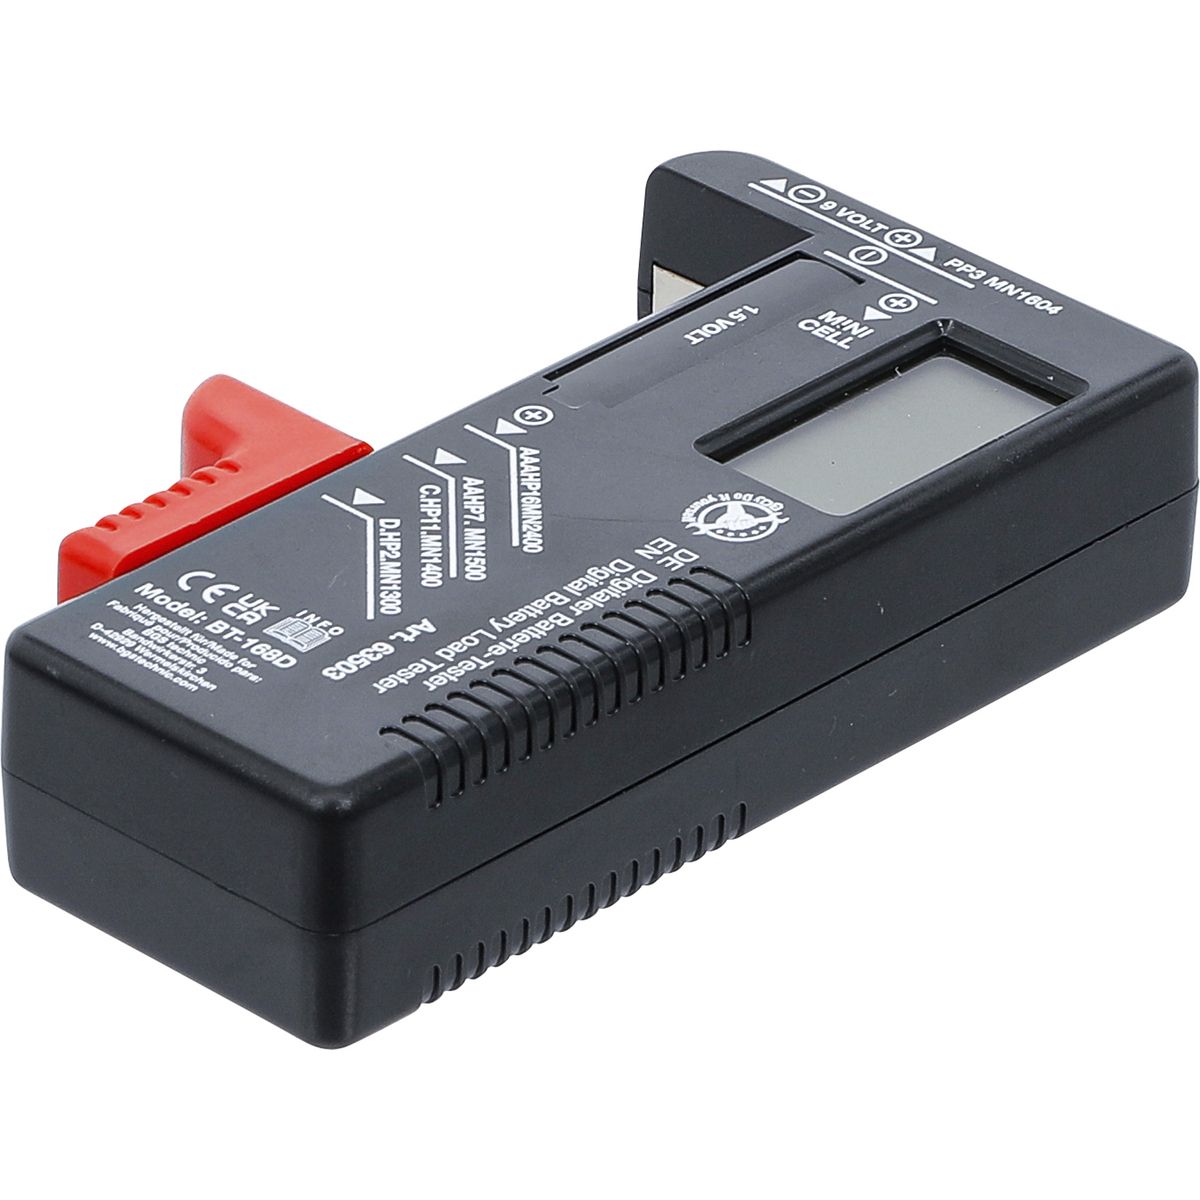 Digital Battery Load Tester | 1.5V / 9V